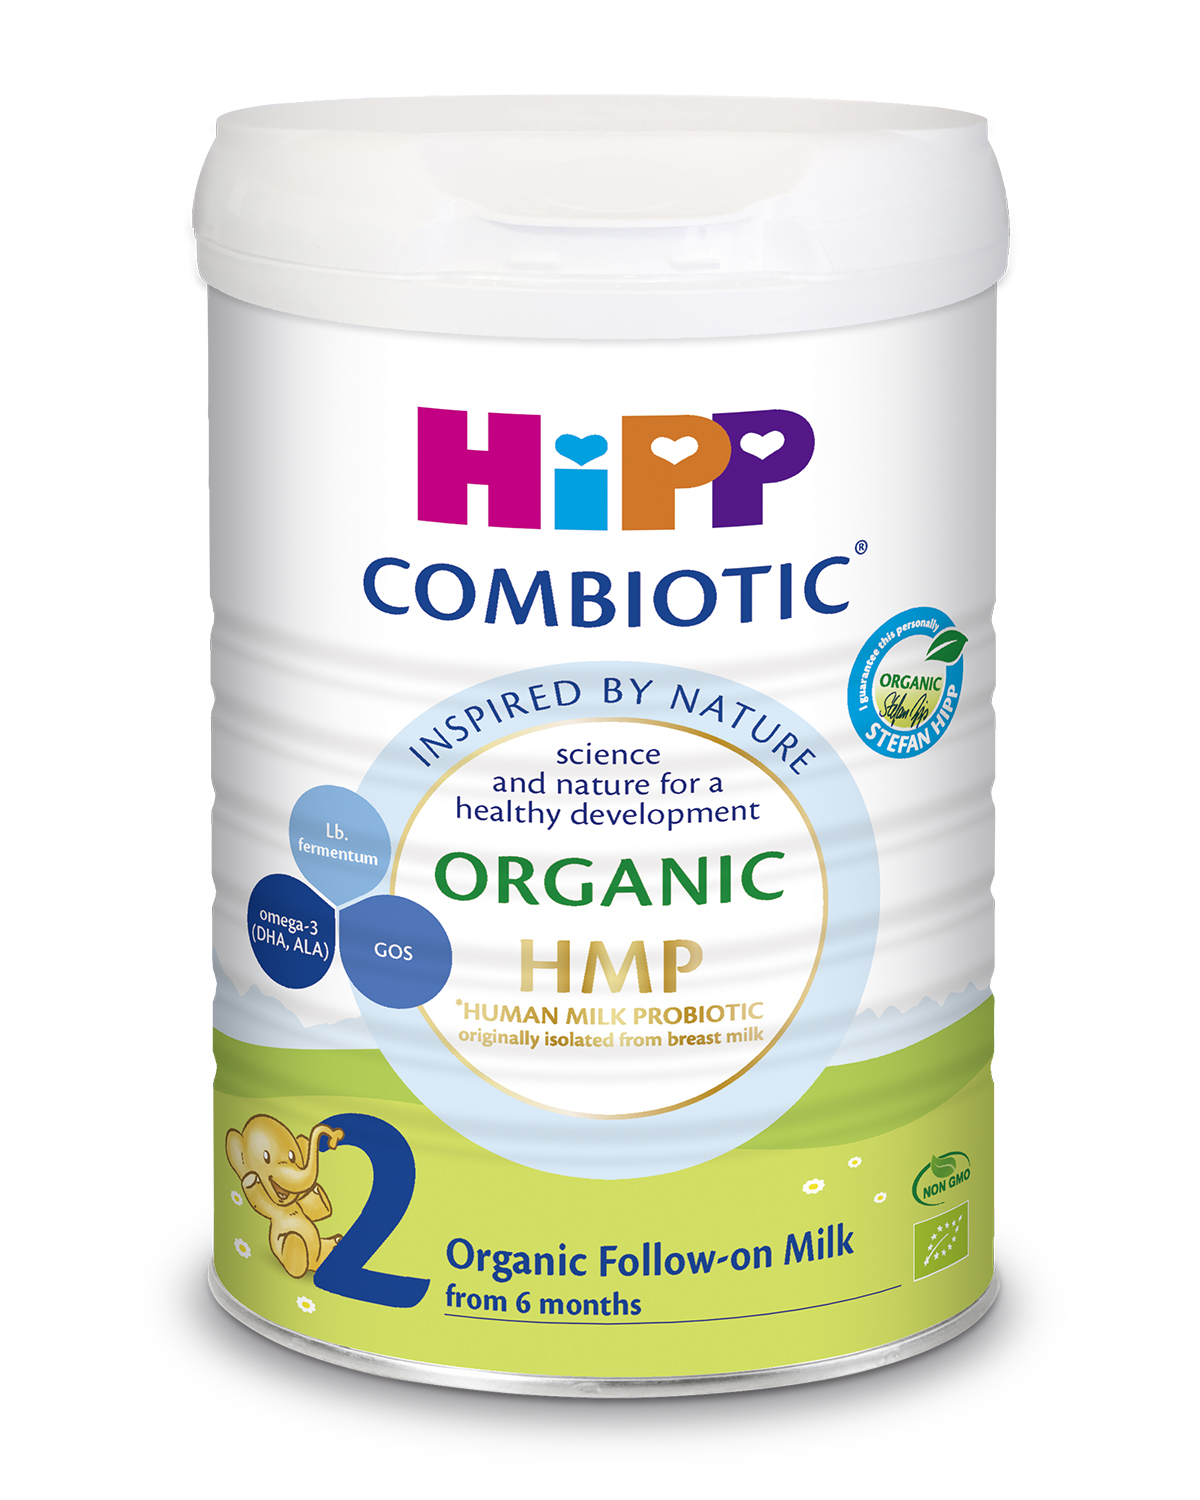 Sữa bột công thức HiPP 2 Organic Combiotic 800g